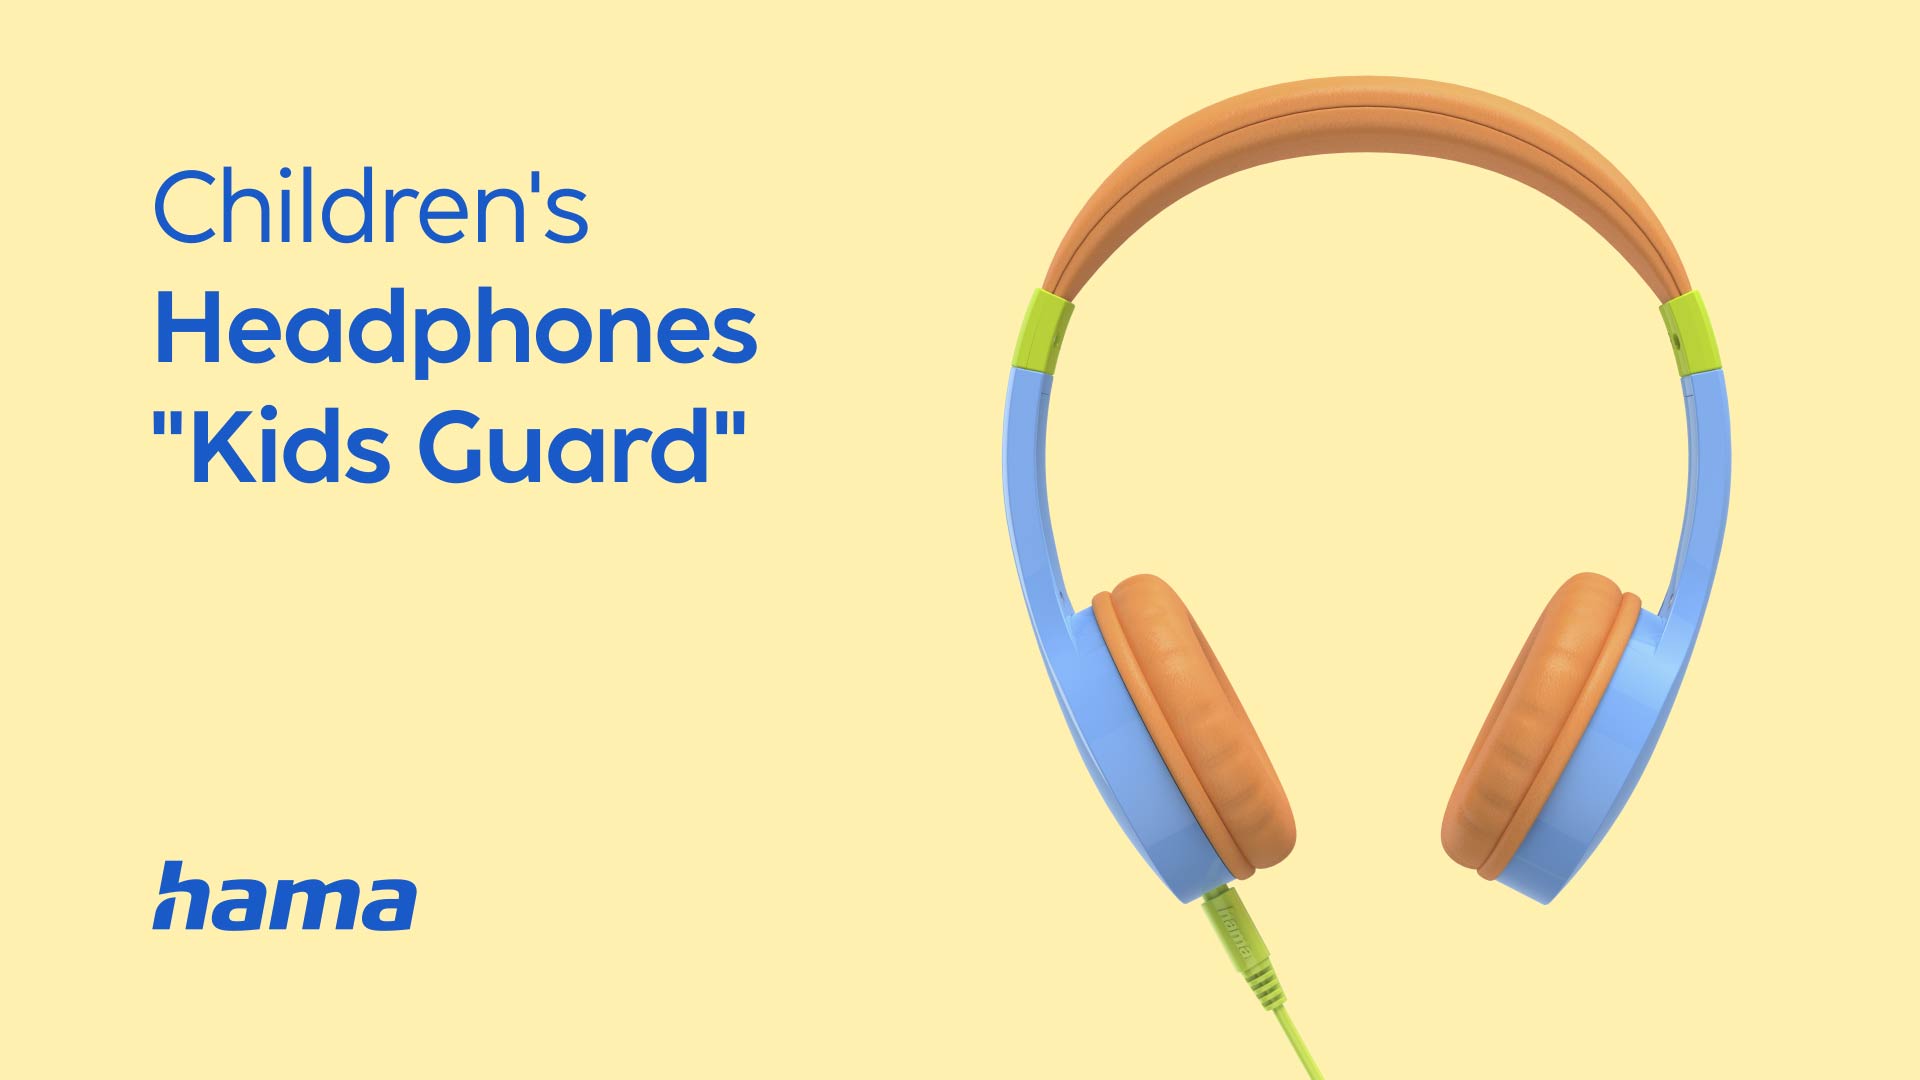 Hama "Kids Guard" Children's Headphones